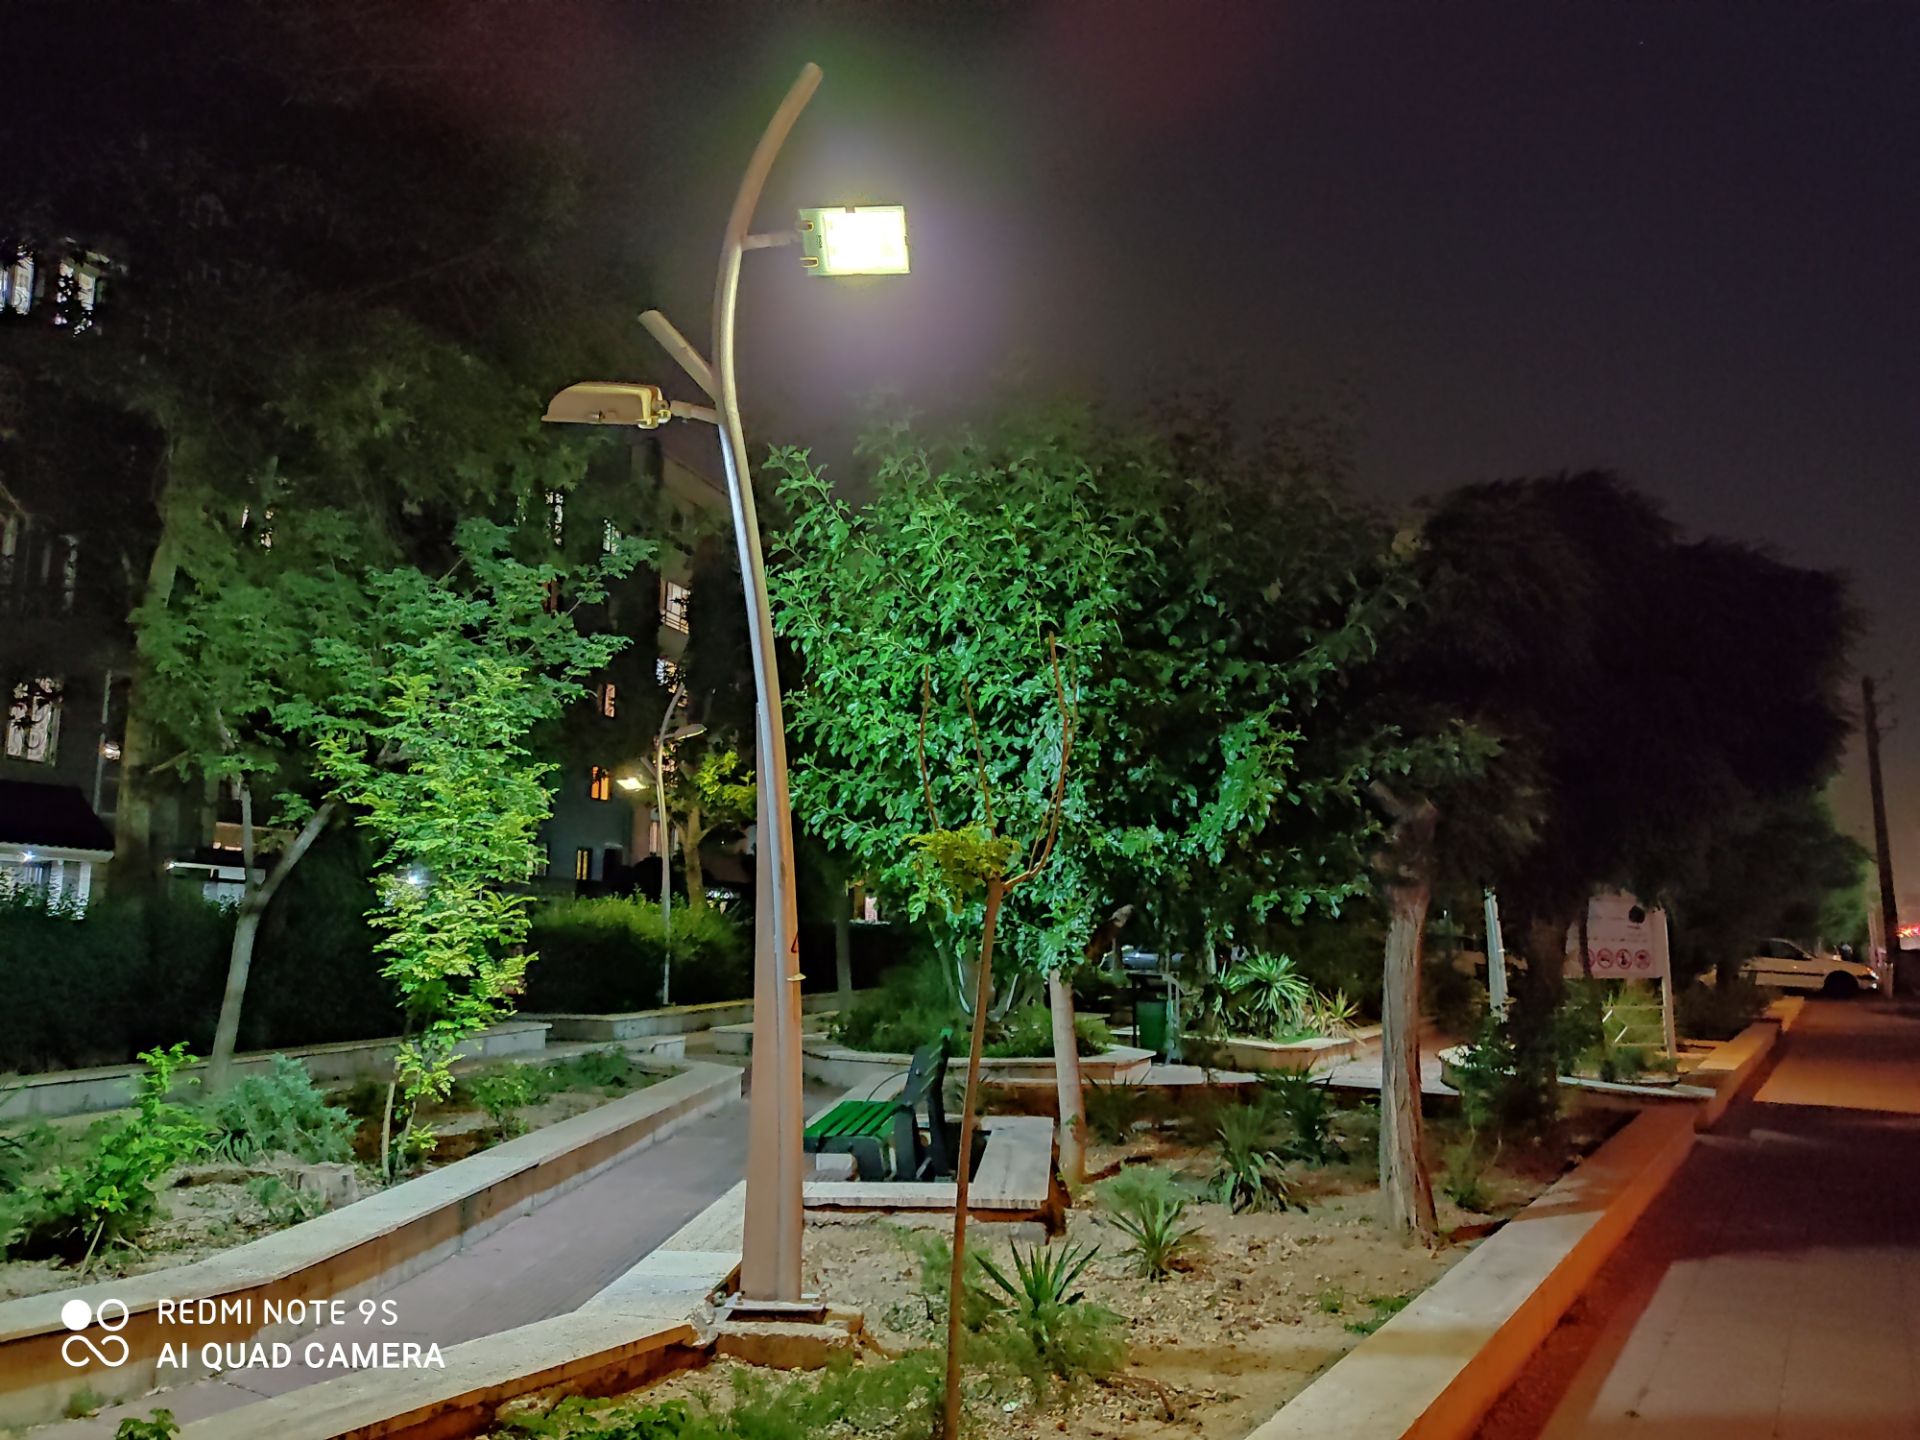 نمونه عکس ردمی نوت 9 اس - درختان یک پارک در تاریکی